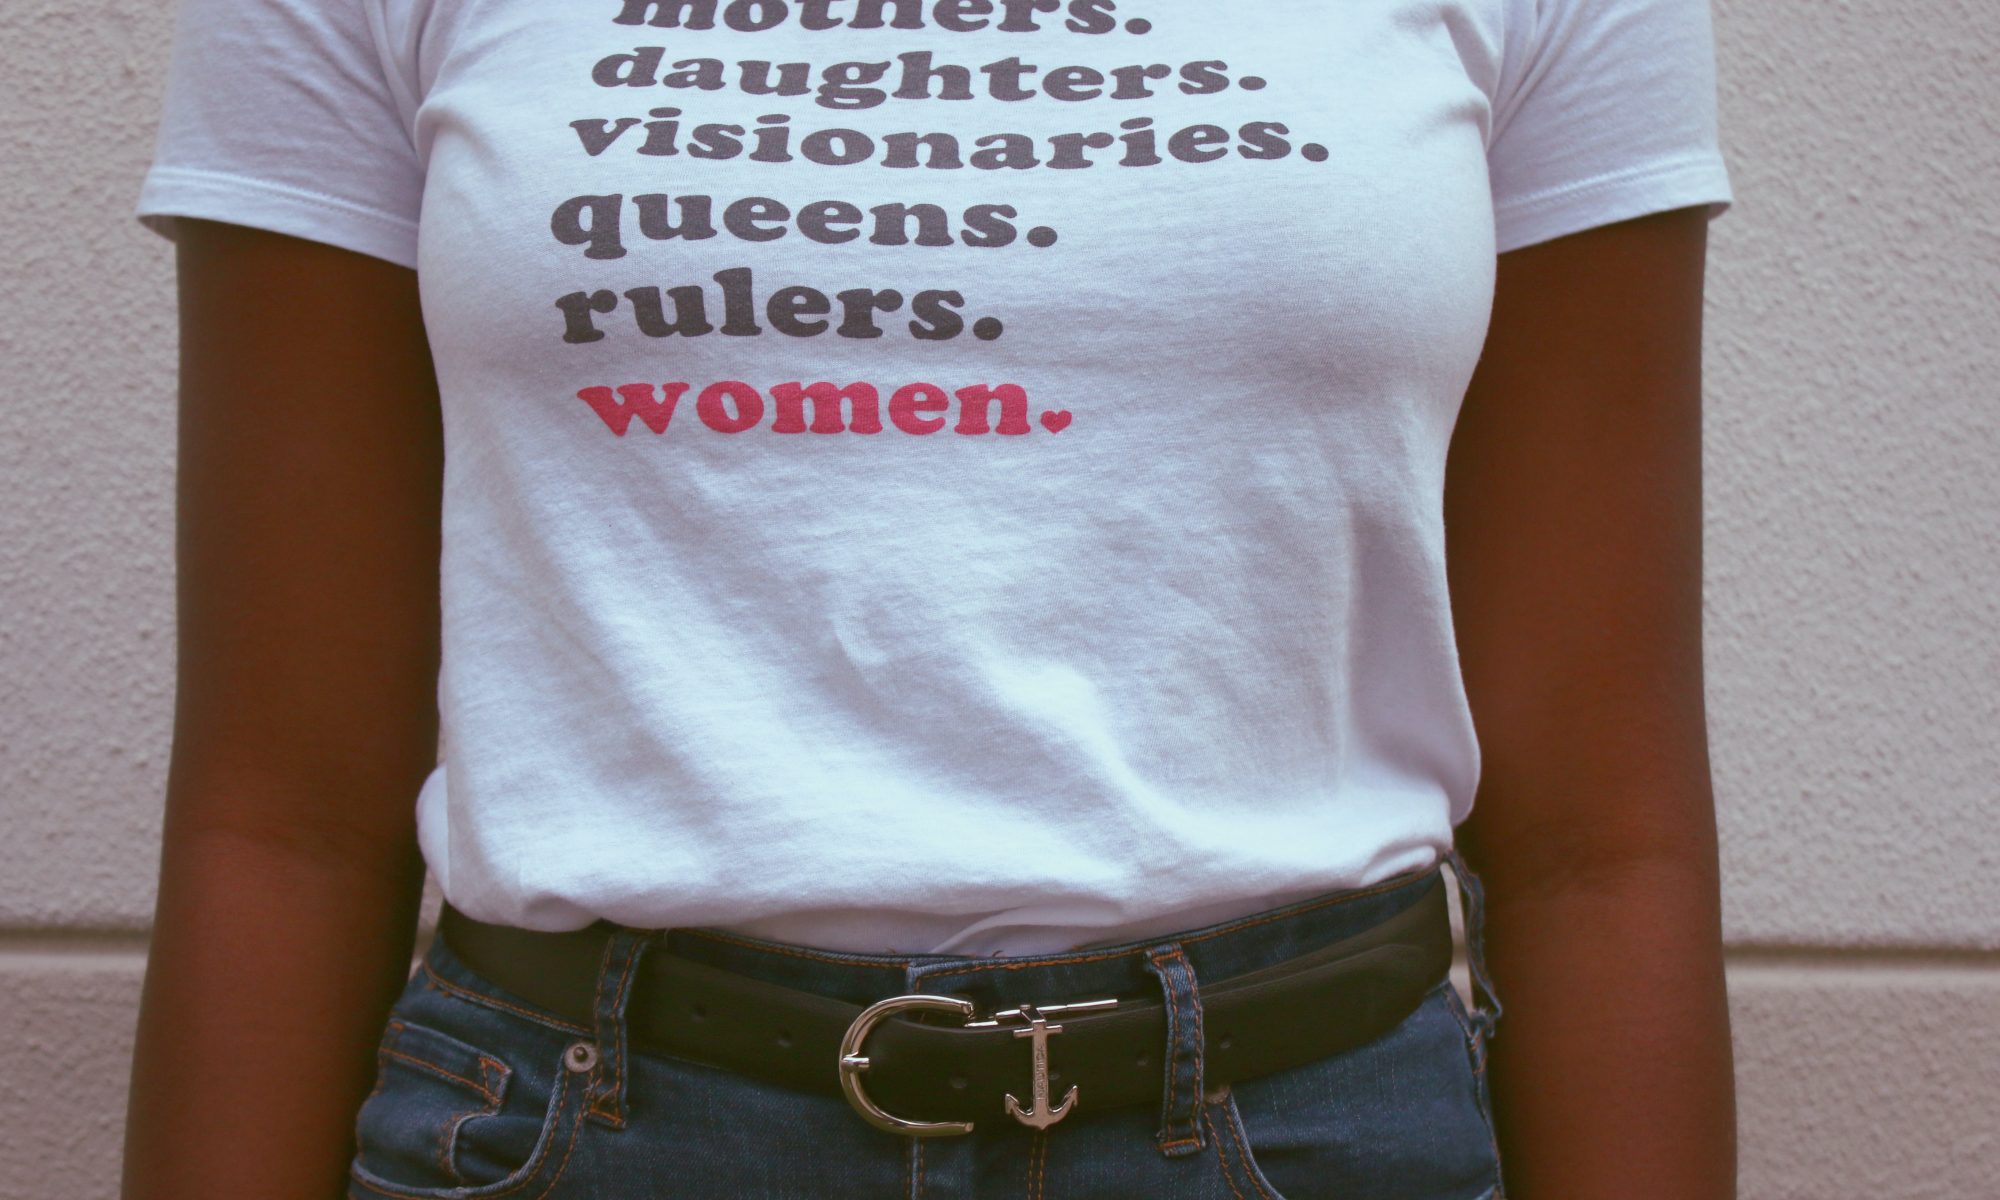 Auf dem Bild ein Tshirt auf dem Folgendes steht: "mothers, daugthers, visionaries, queens, rulers, women"